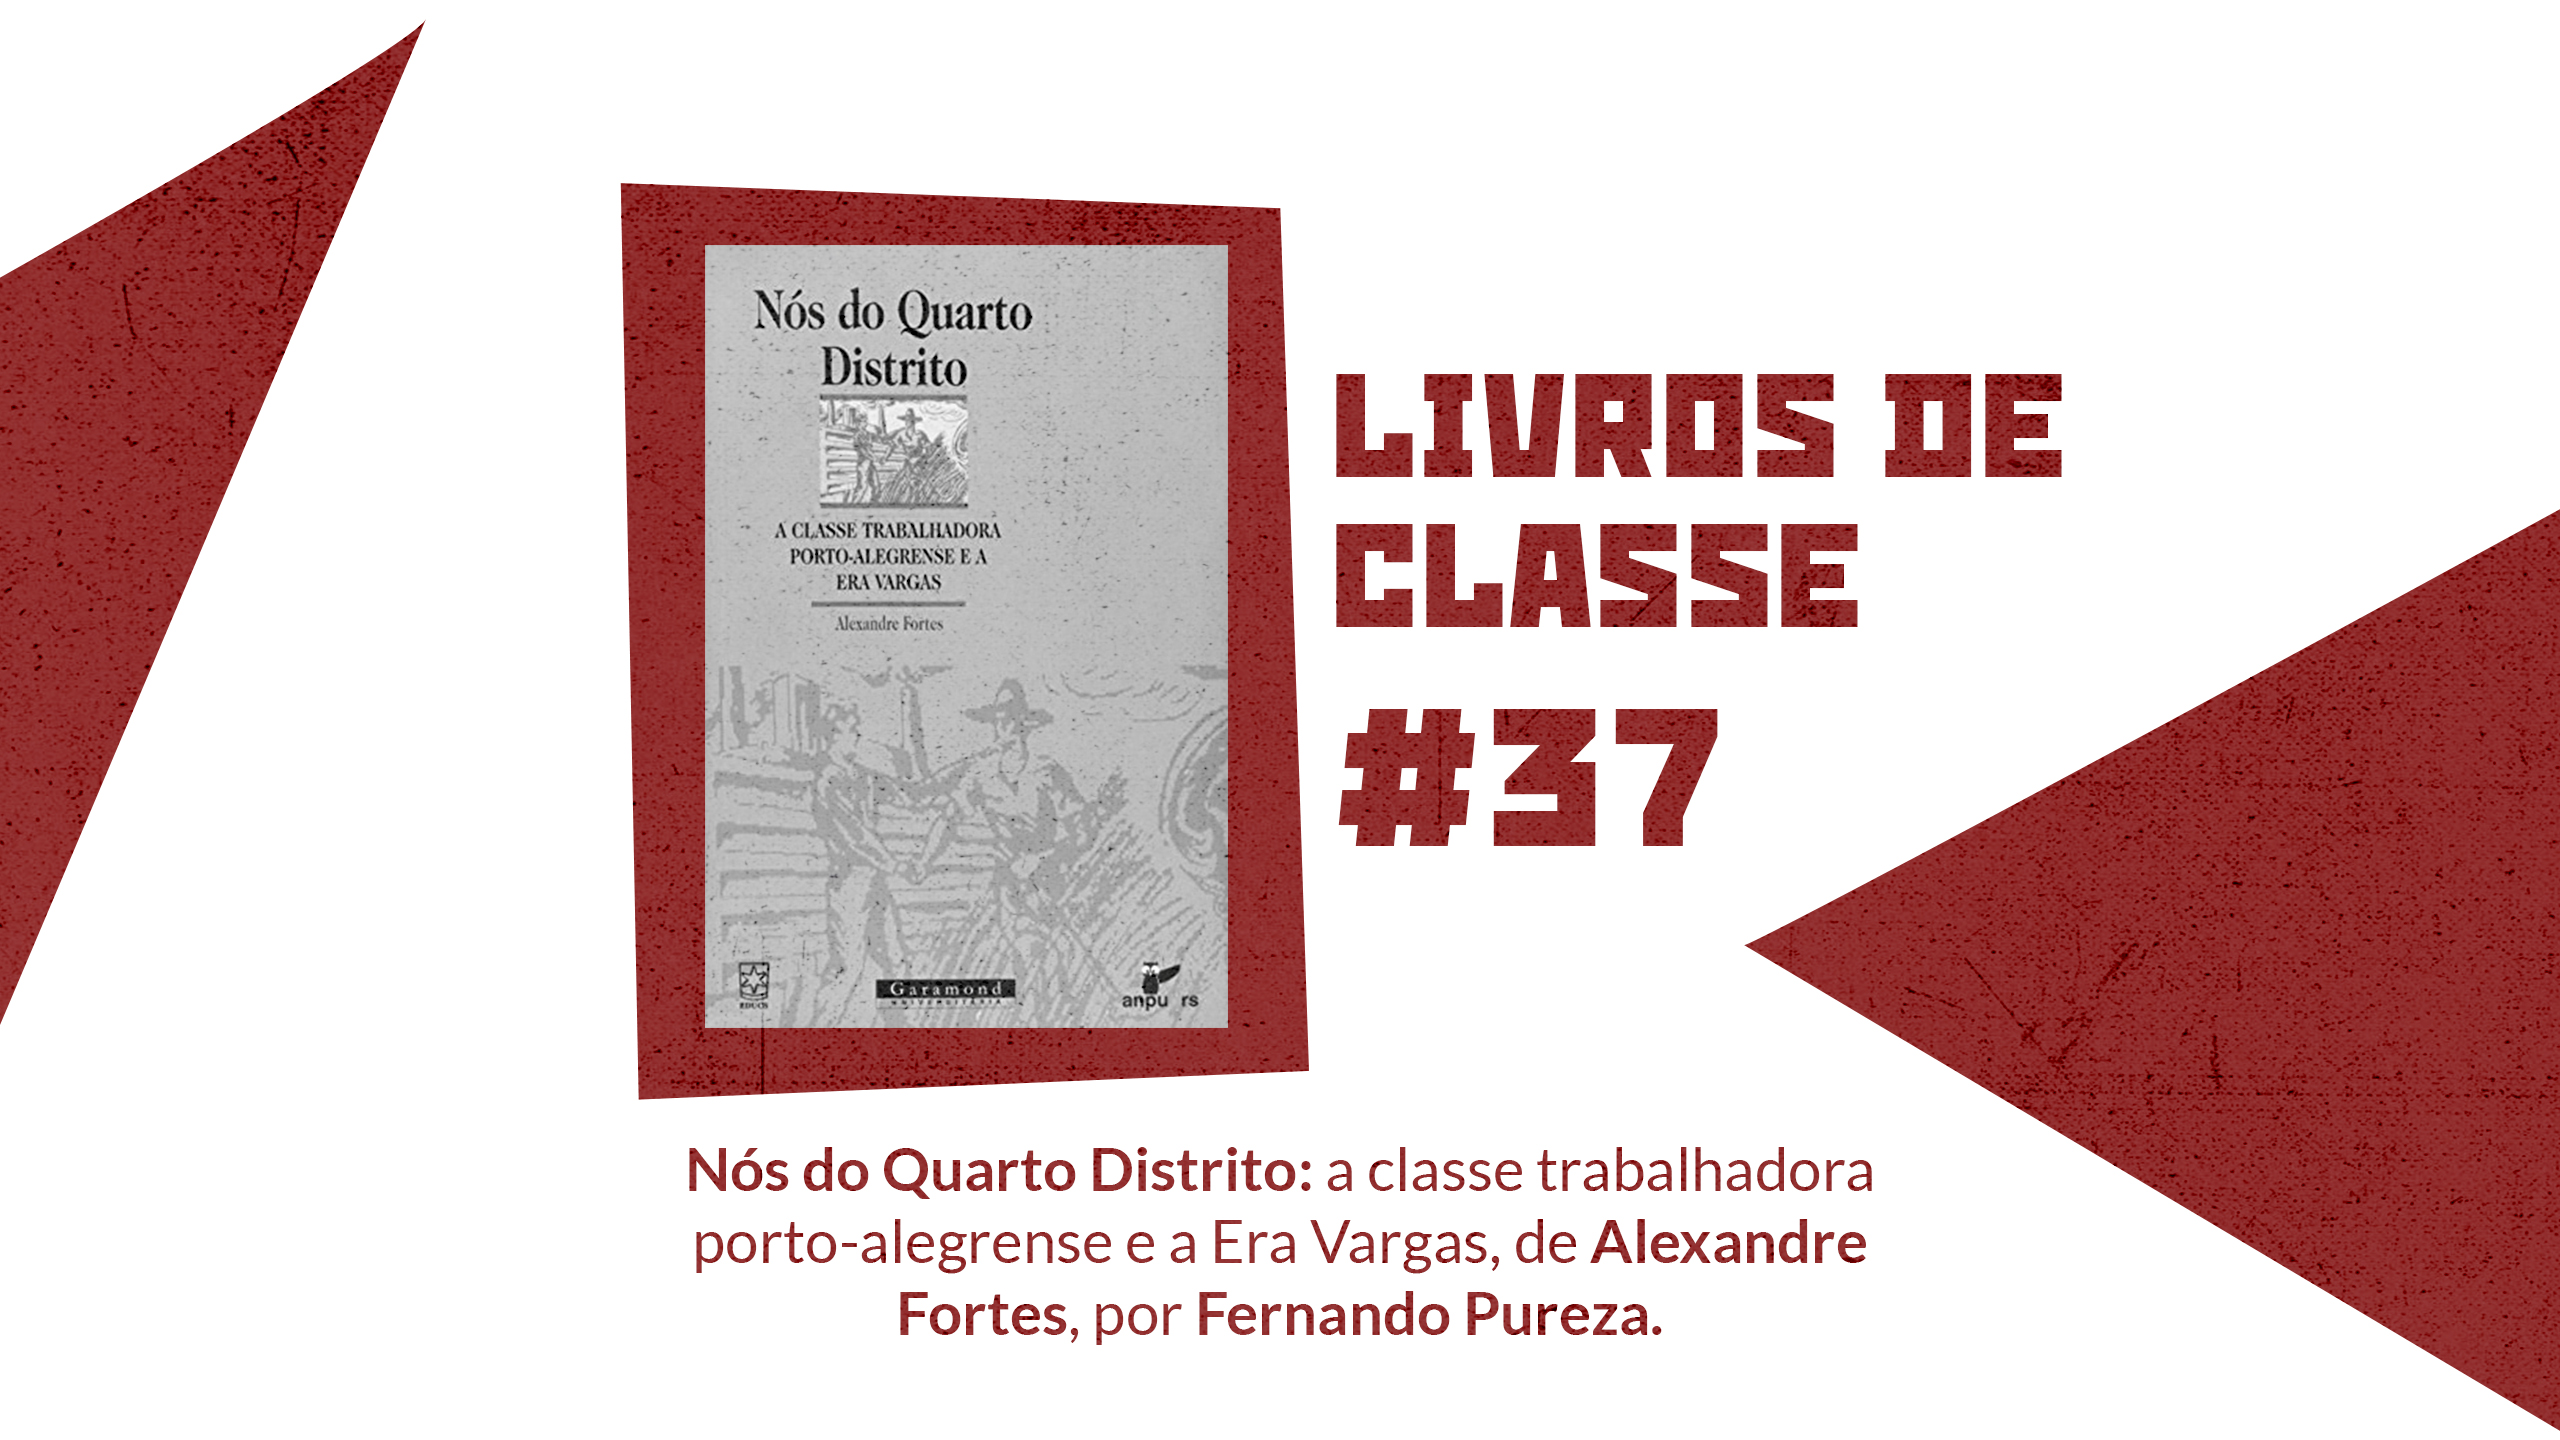 Livros de Classe #37: Nós do quarto distrito: a classe trabalhadora porto-alegrense e a Era Vargas, de Alexandre Fortes, por Fernando Pureza